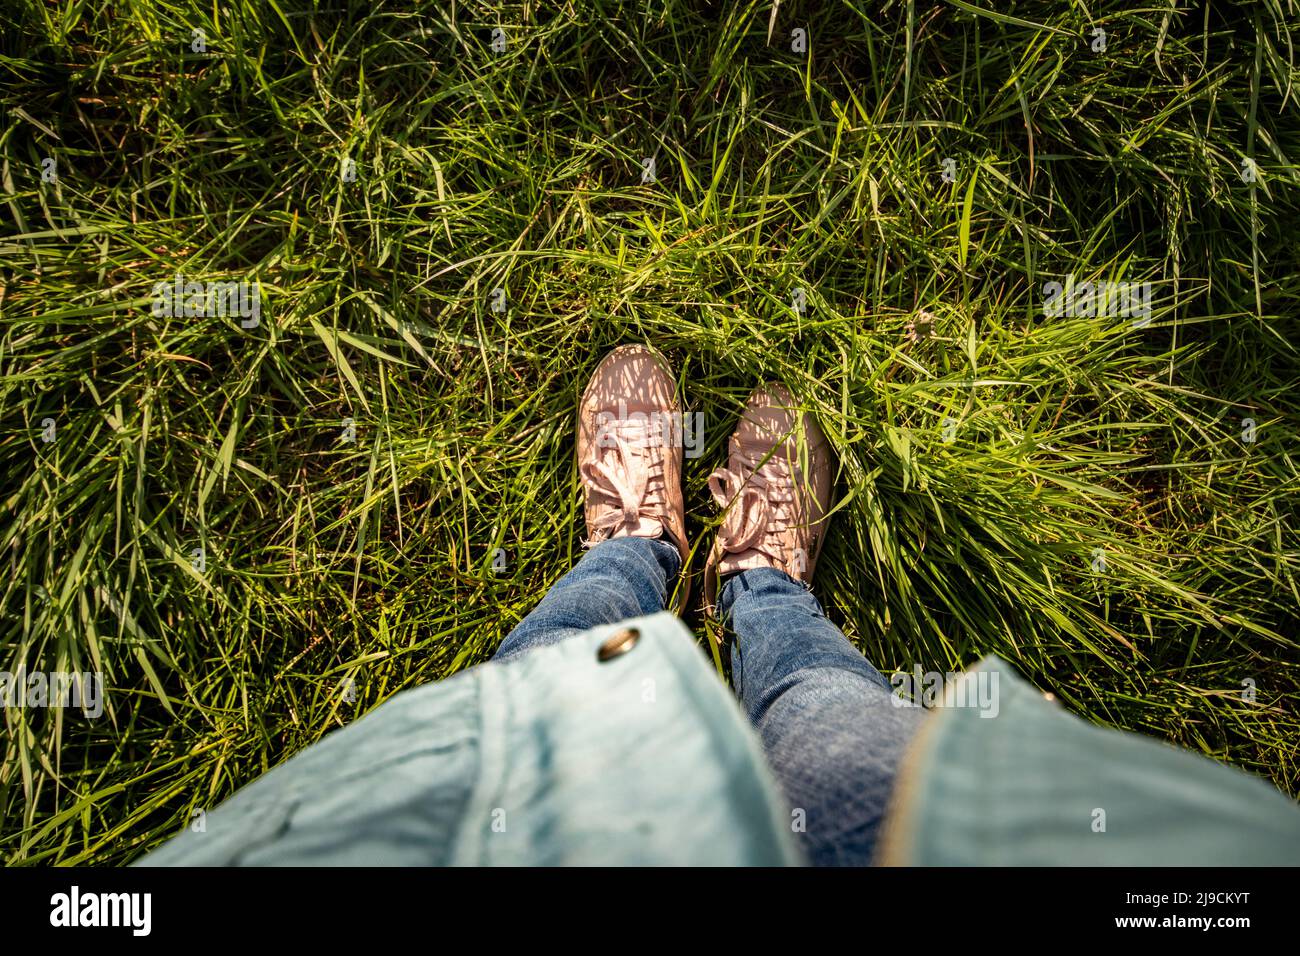 Beine und Füße einer Person, die im hohen Gras steht Stockfoto